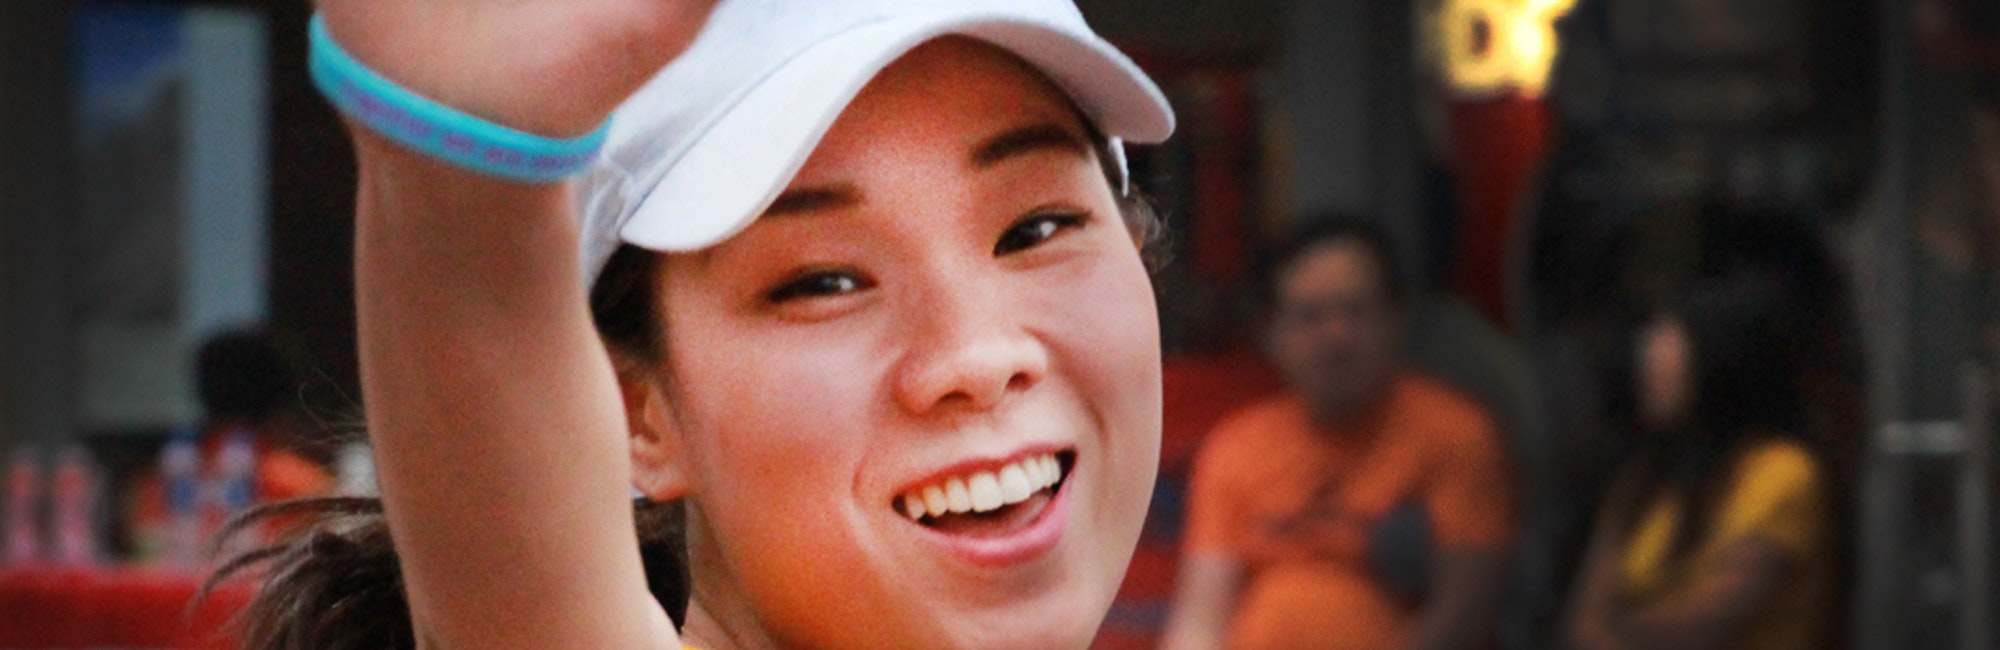 Foto em close, cortada, de uma menina sorridente, usando um uniforme de tênis